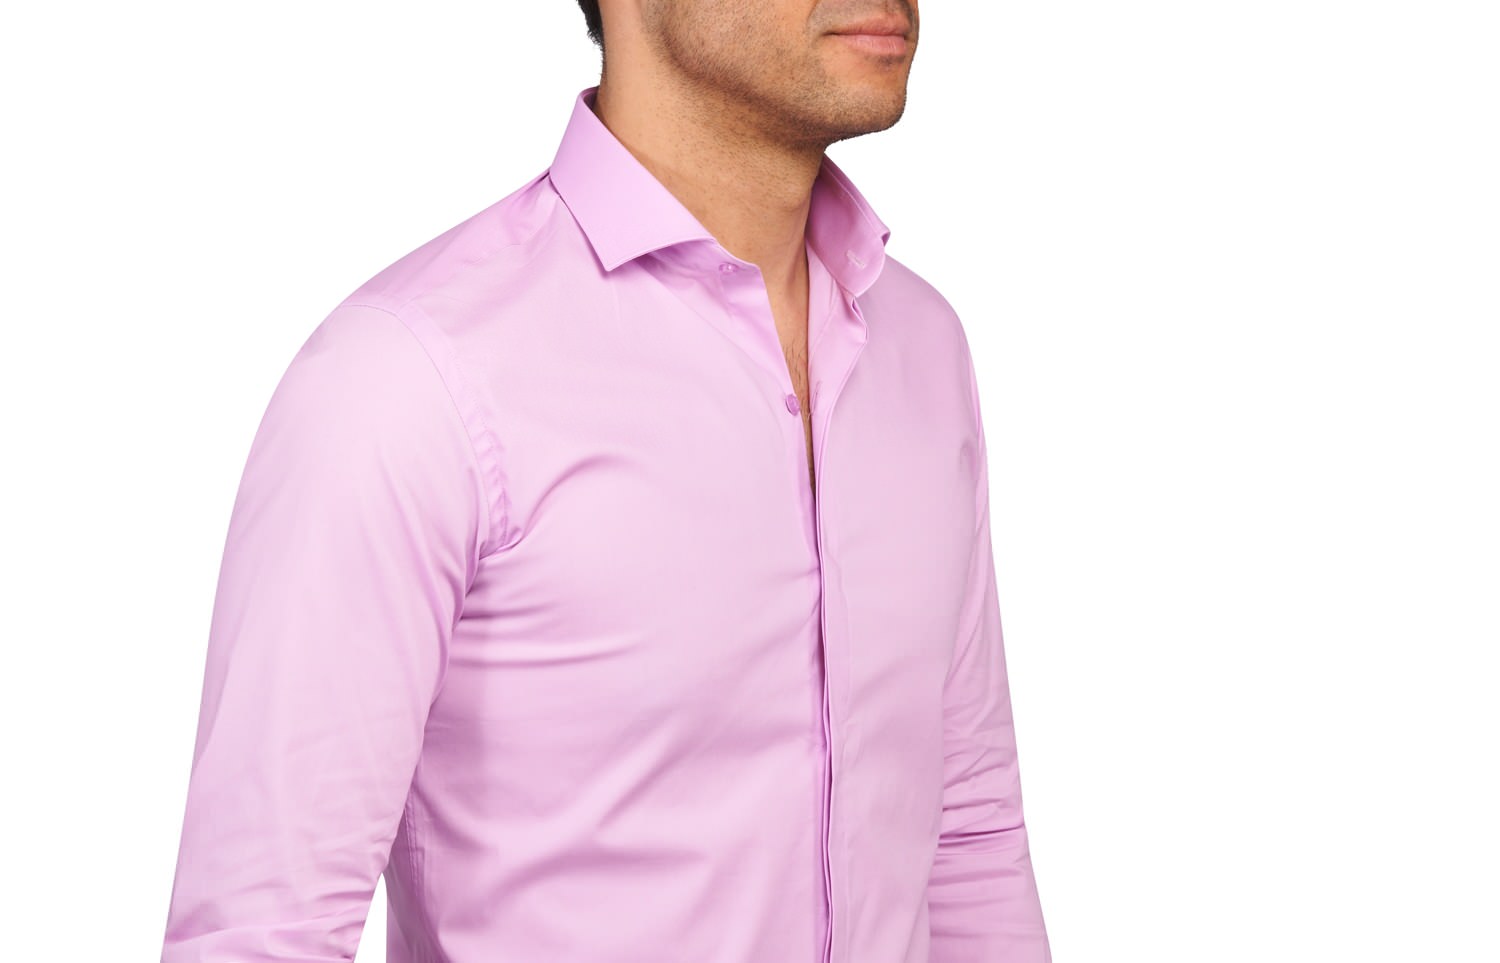 Quelle couleur va avec une chemise rose ?